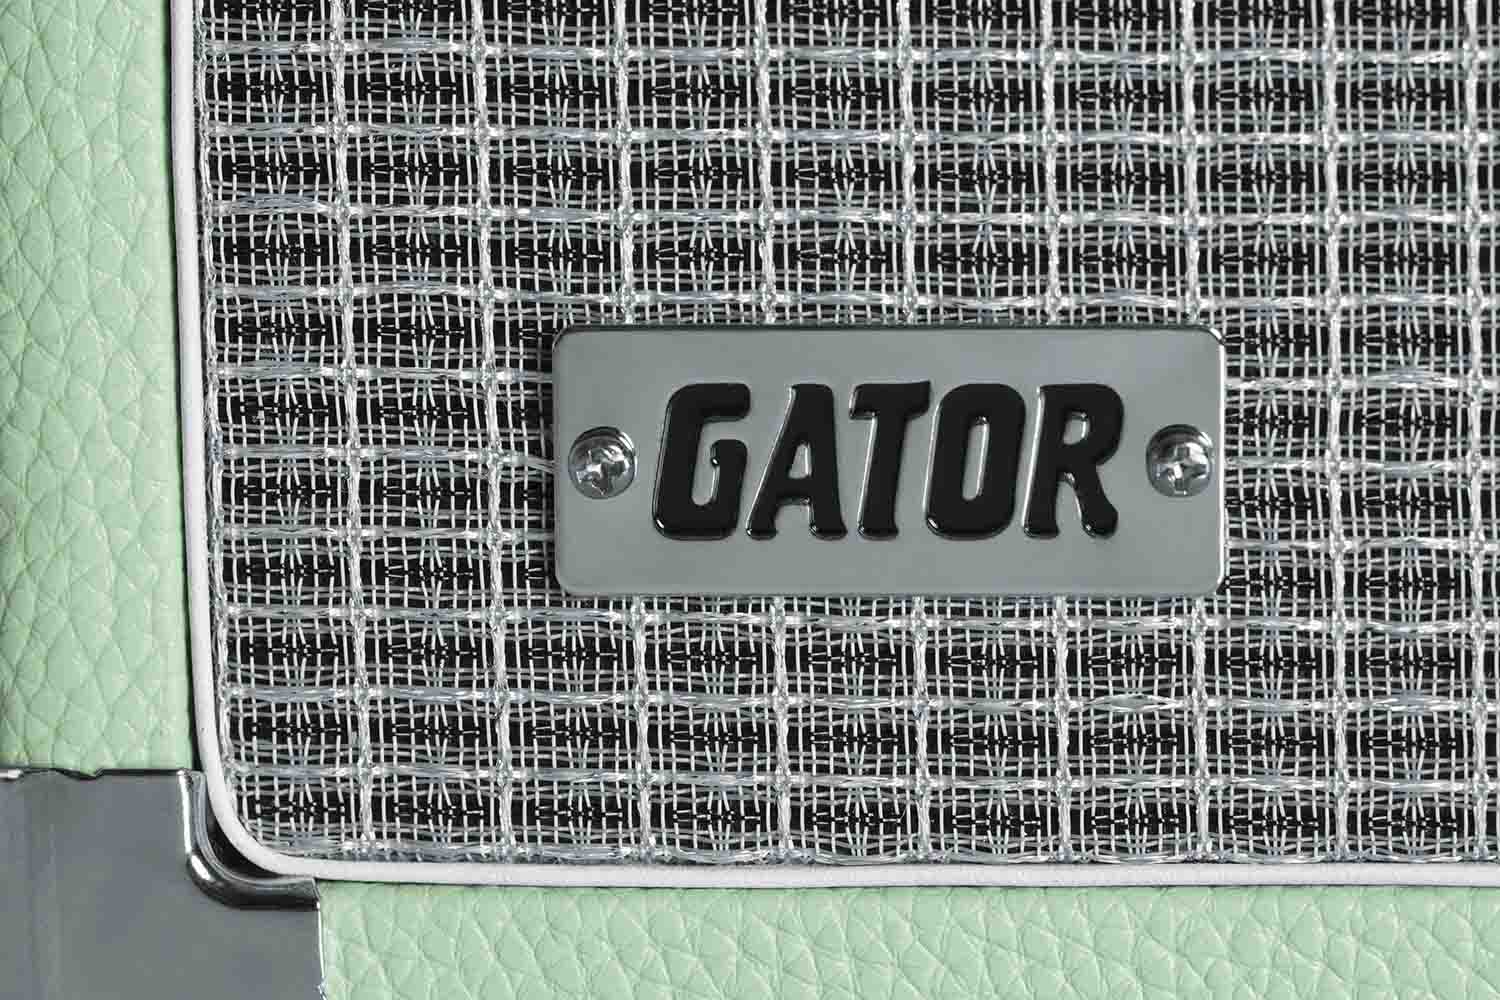 Gator Cases GR-RETRORACK-3SG Vintage Amp Vibe Rack Case – 3U Seafoam Green - Hollywood DJ